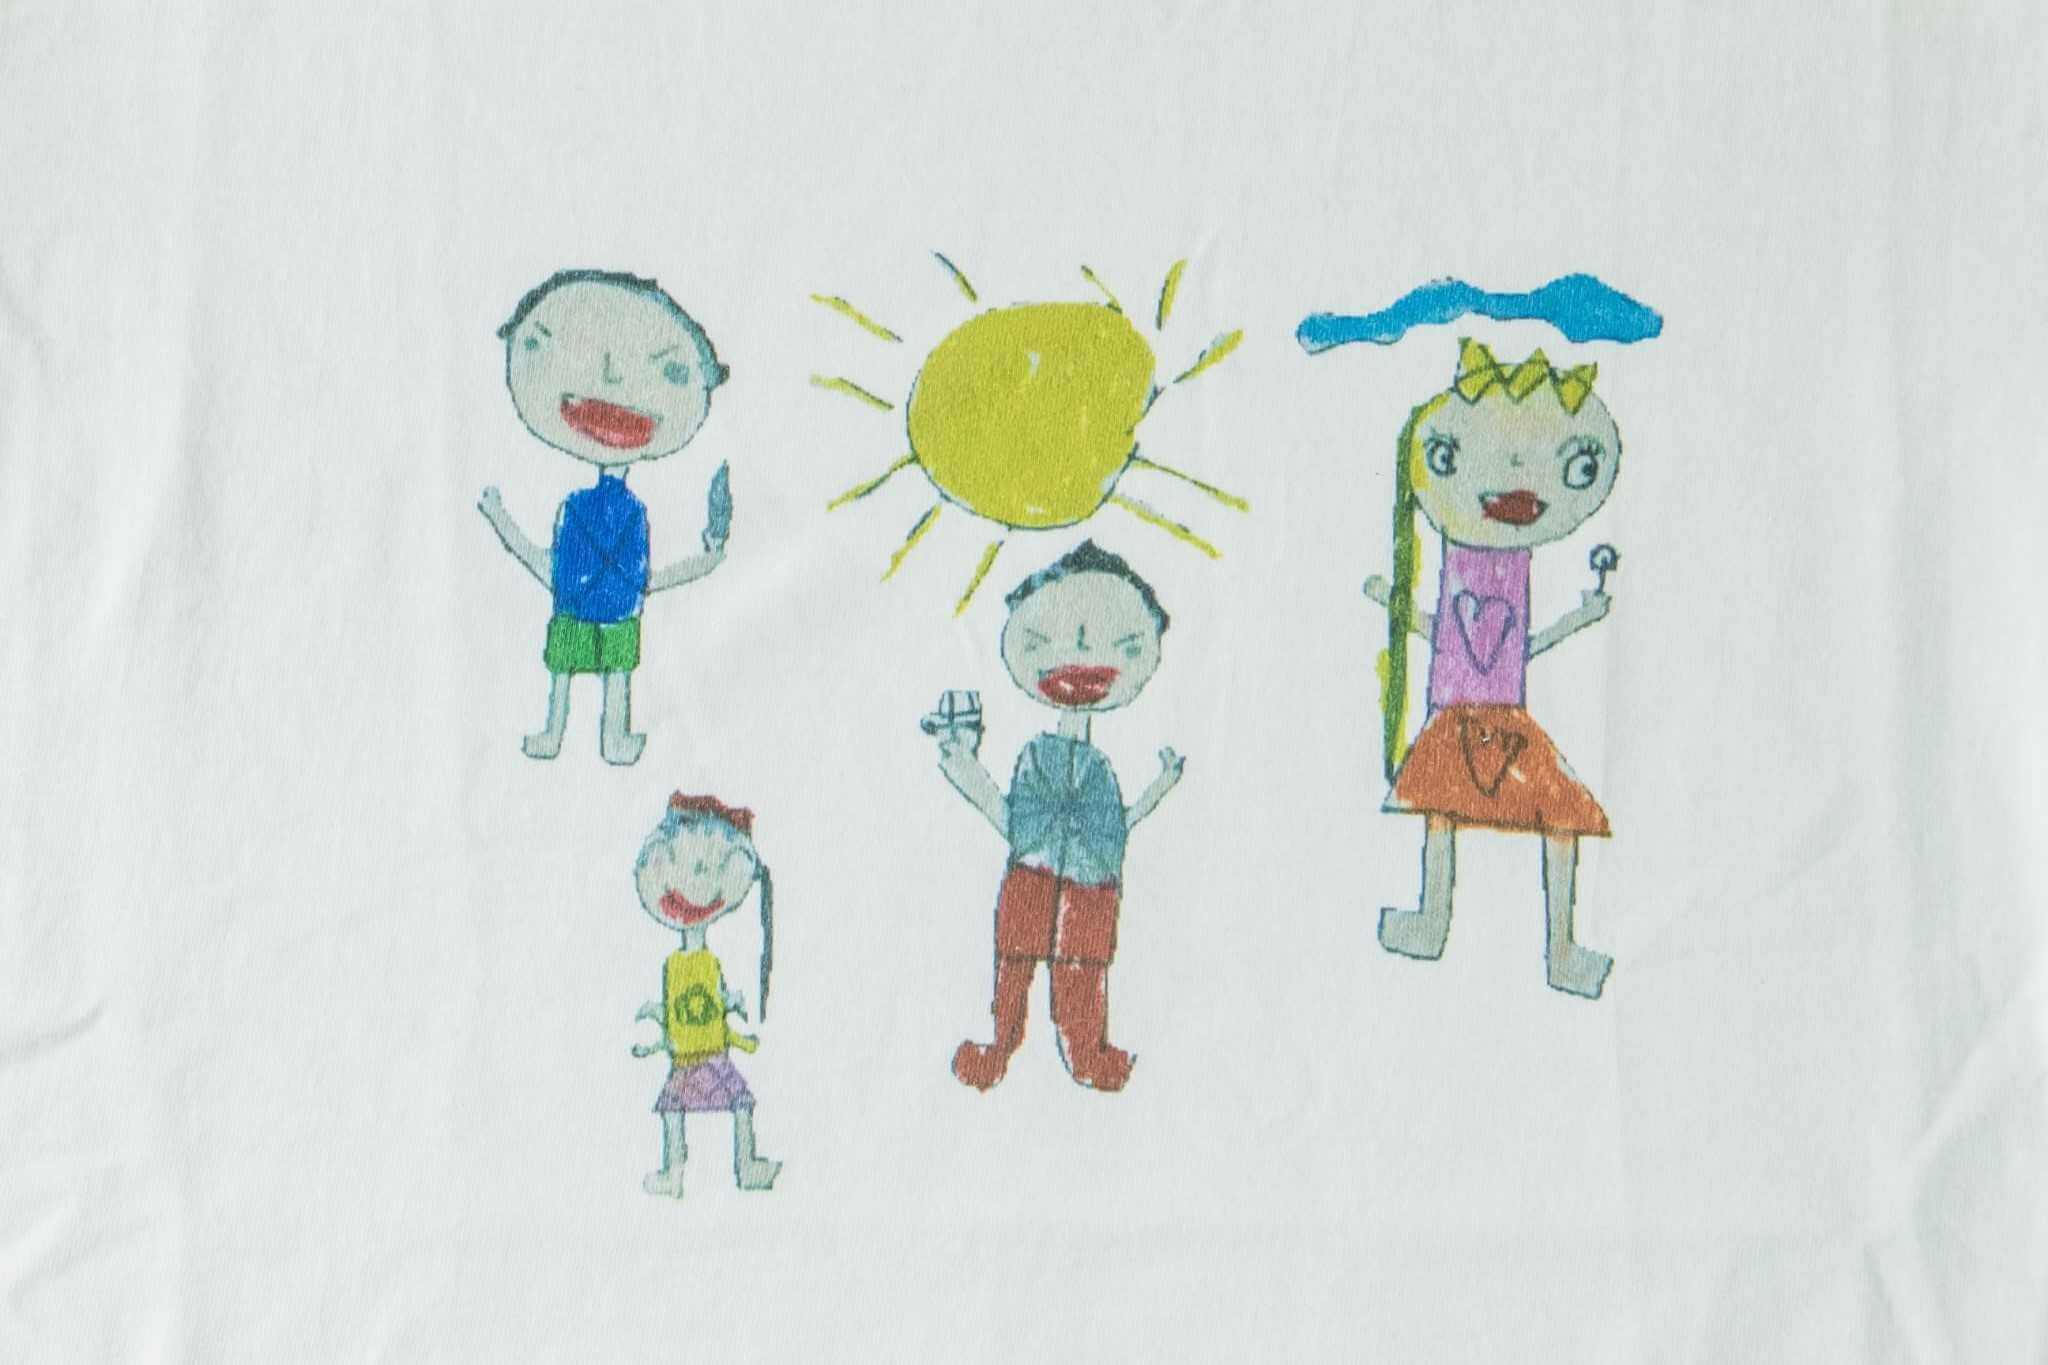 客製化T恤- 小朋友塗鴉系列2的第3張圖(客製化公司制服、班服製作、團體服製作等示意或作品圖)